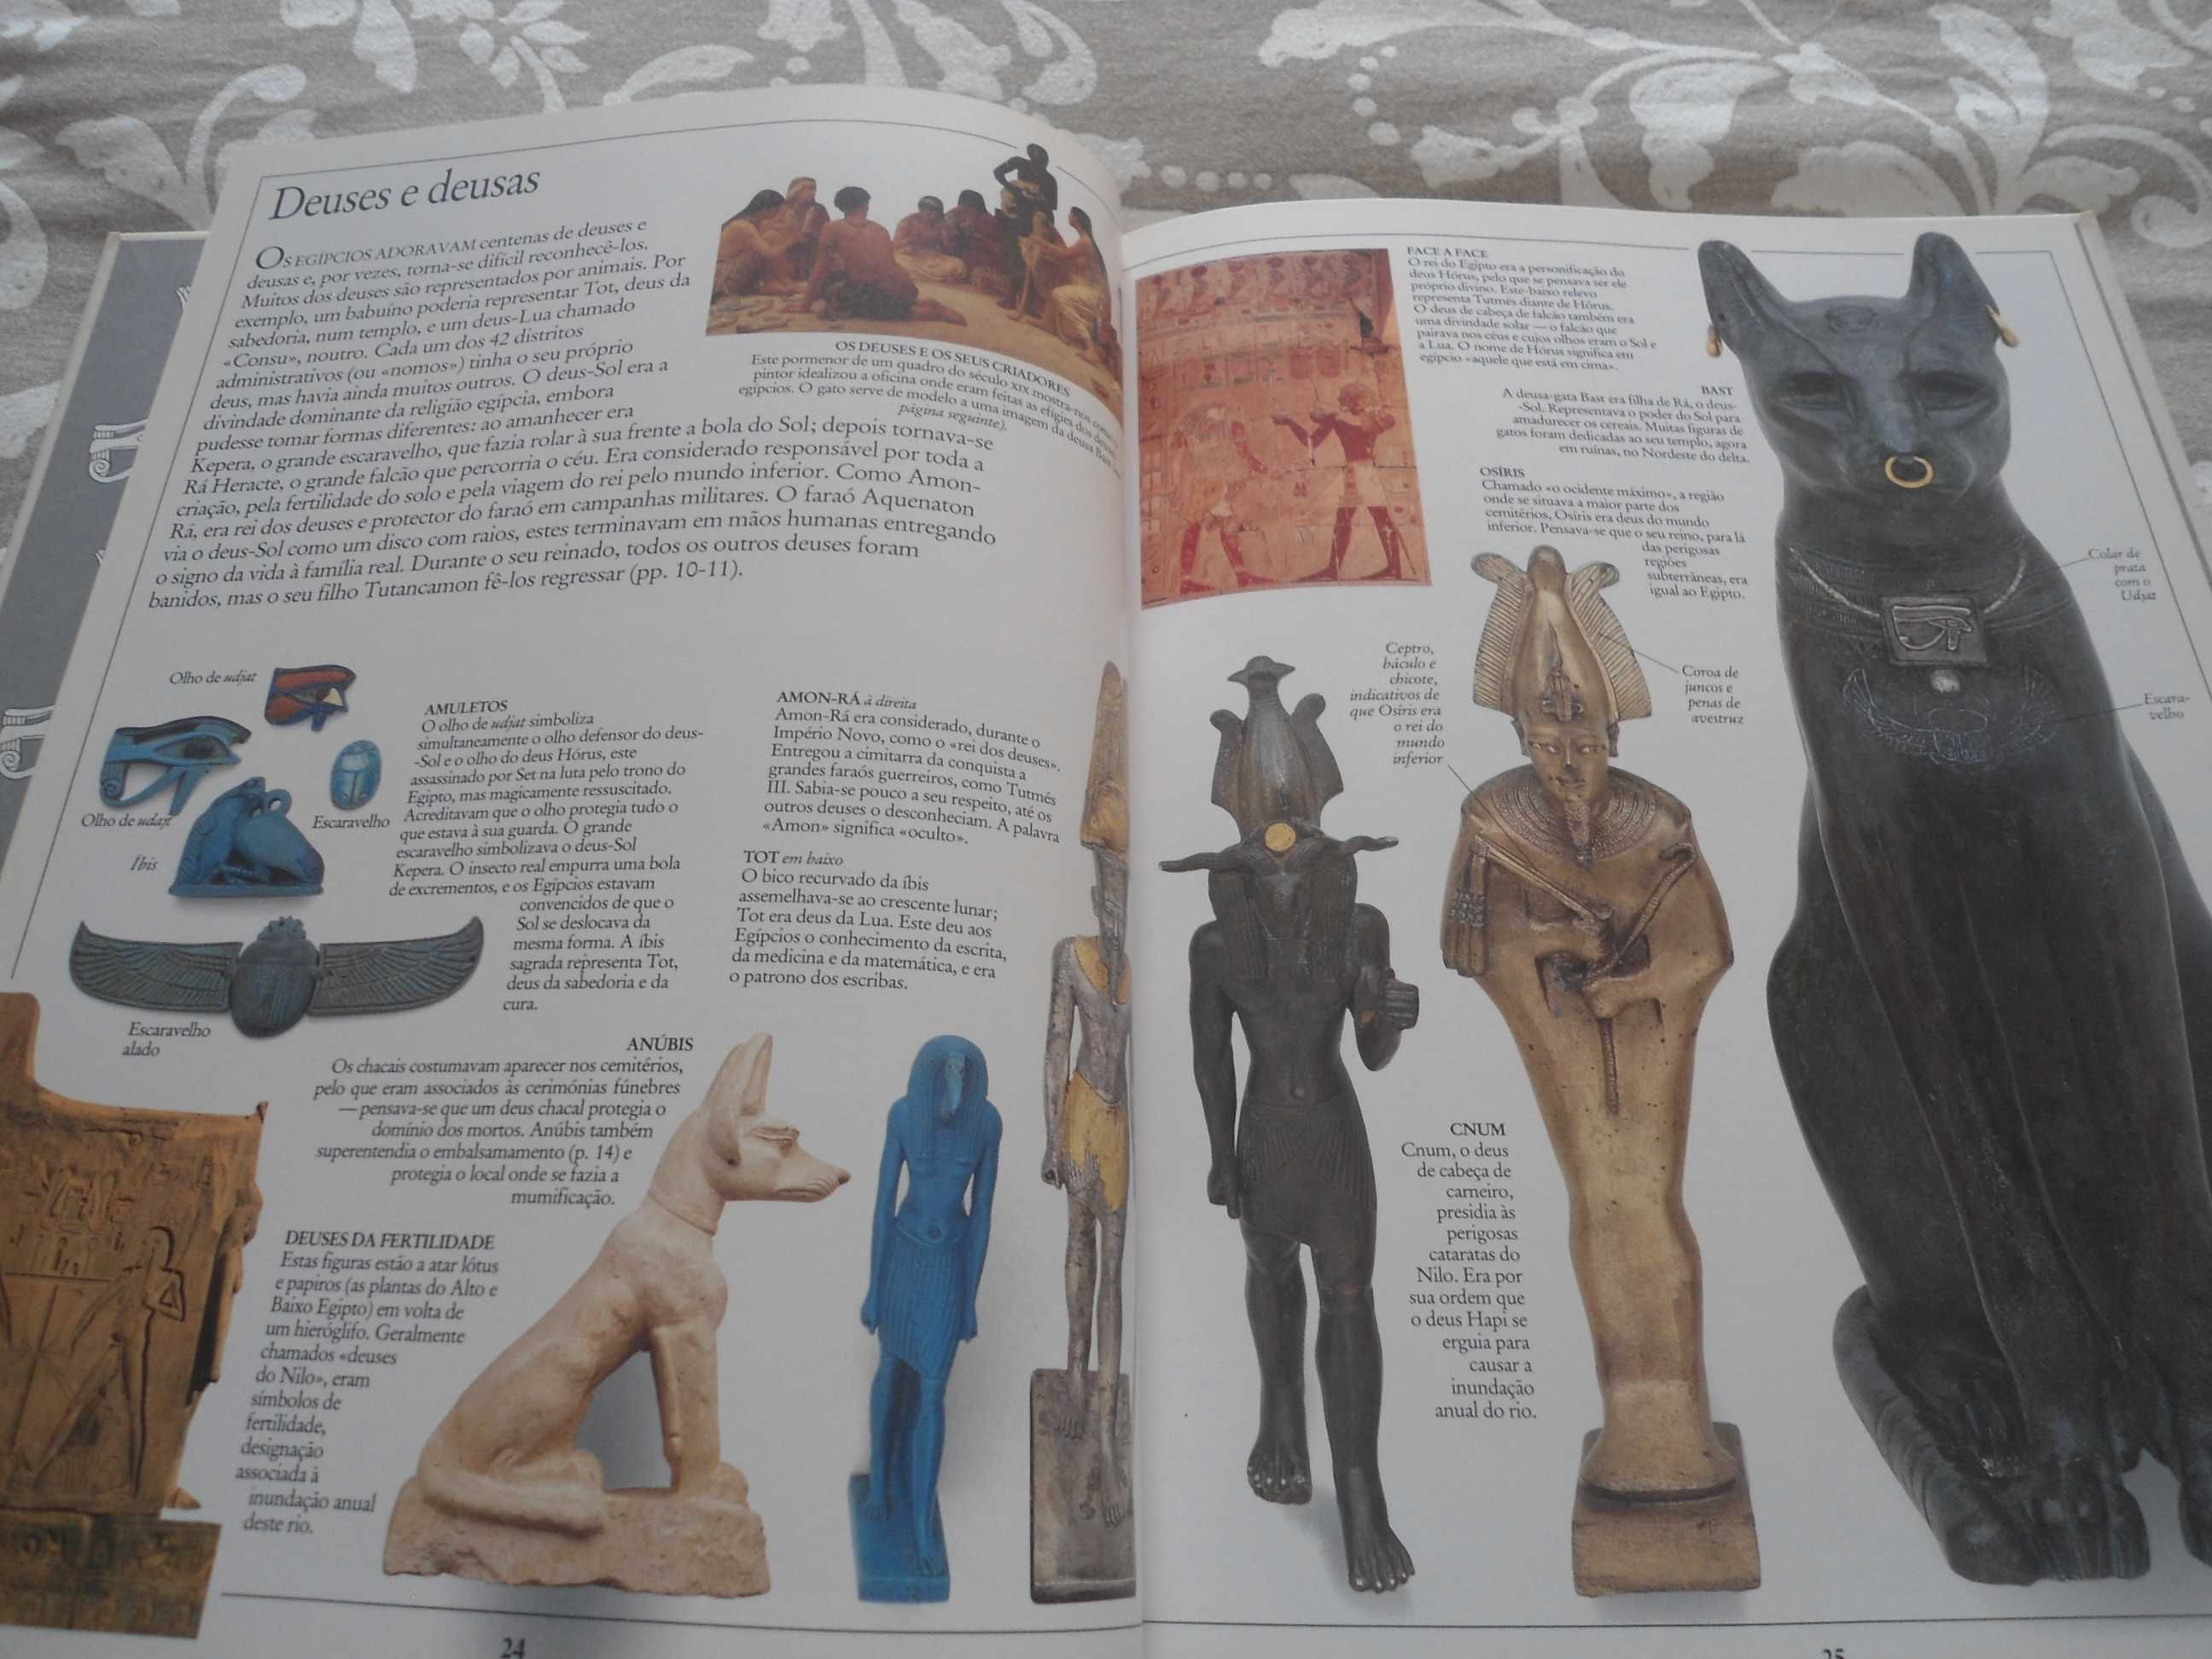 Enciclopédia Visual Verbo - Antigo Egipto (nº 18)